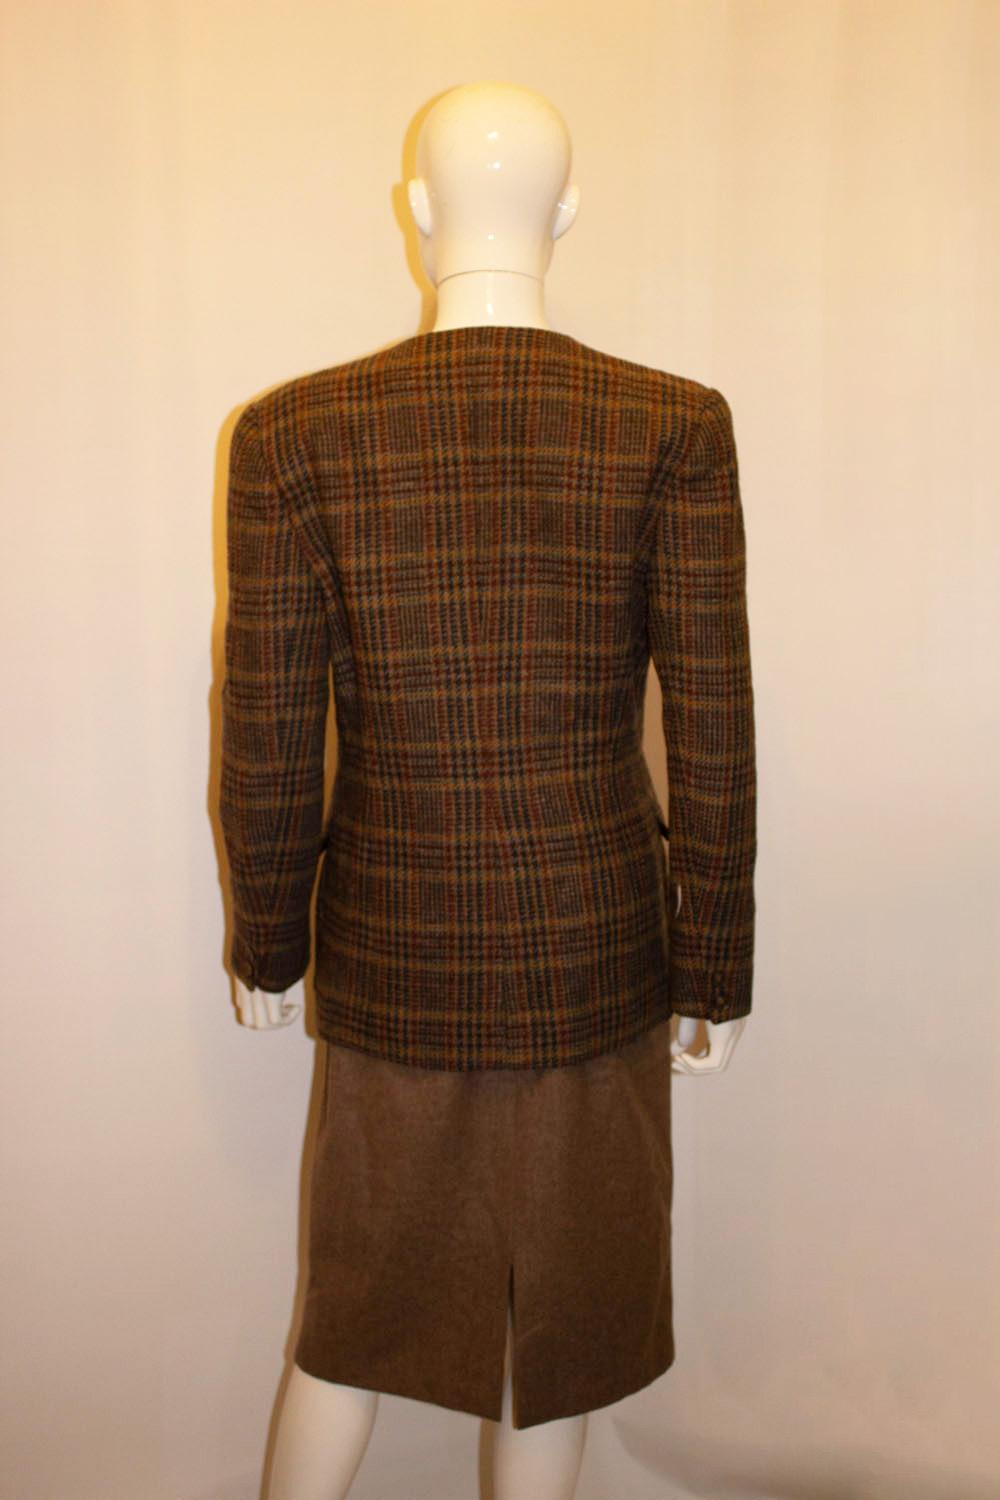 Eine wunderbare Vintage-Rock Anzug von Liberty of London, der Stoff, wie Sie erwarten würden, ist von hervorragender Qualität.
Die Jacke hat einen v-förmigen Ausschnitt mit zwei Knöpfen vorne und attraktiven Details an den Taschen. Der braune